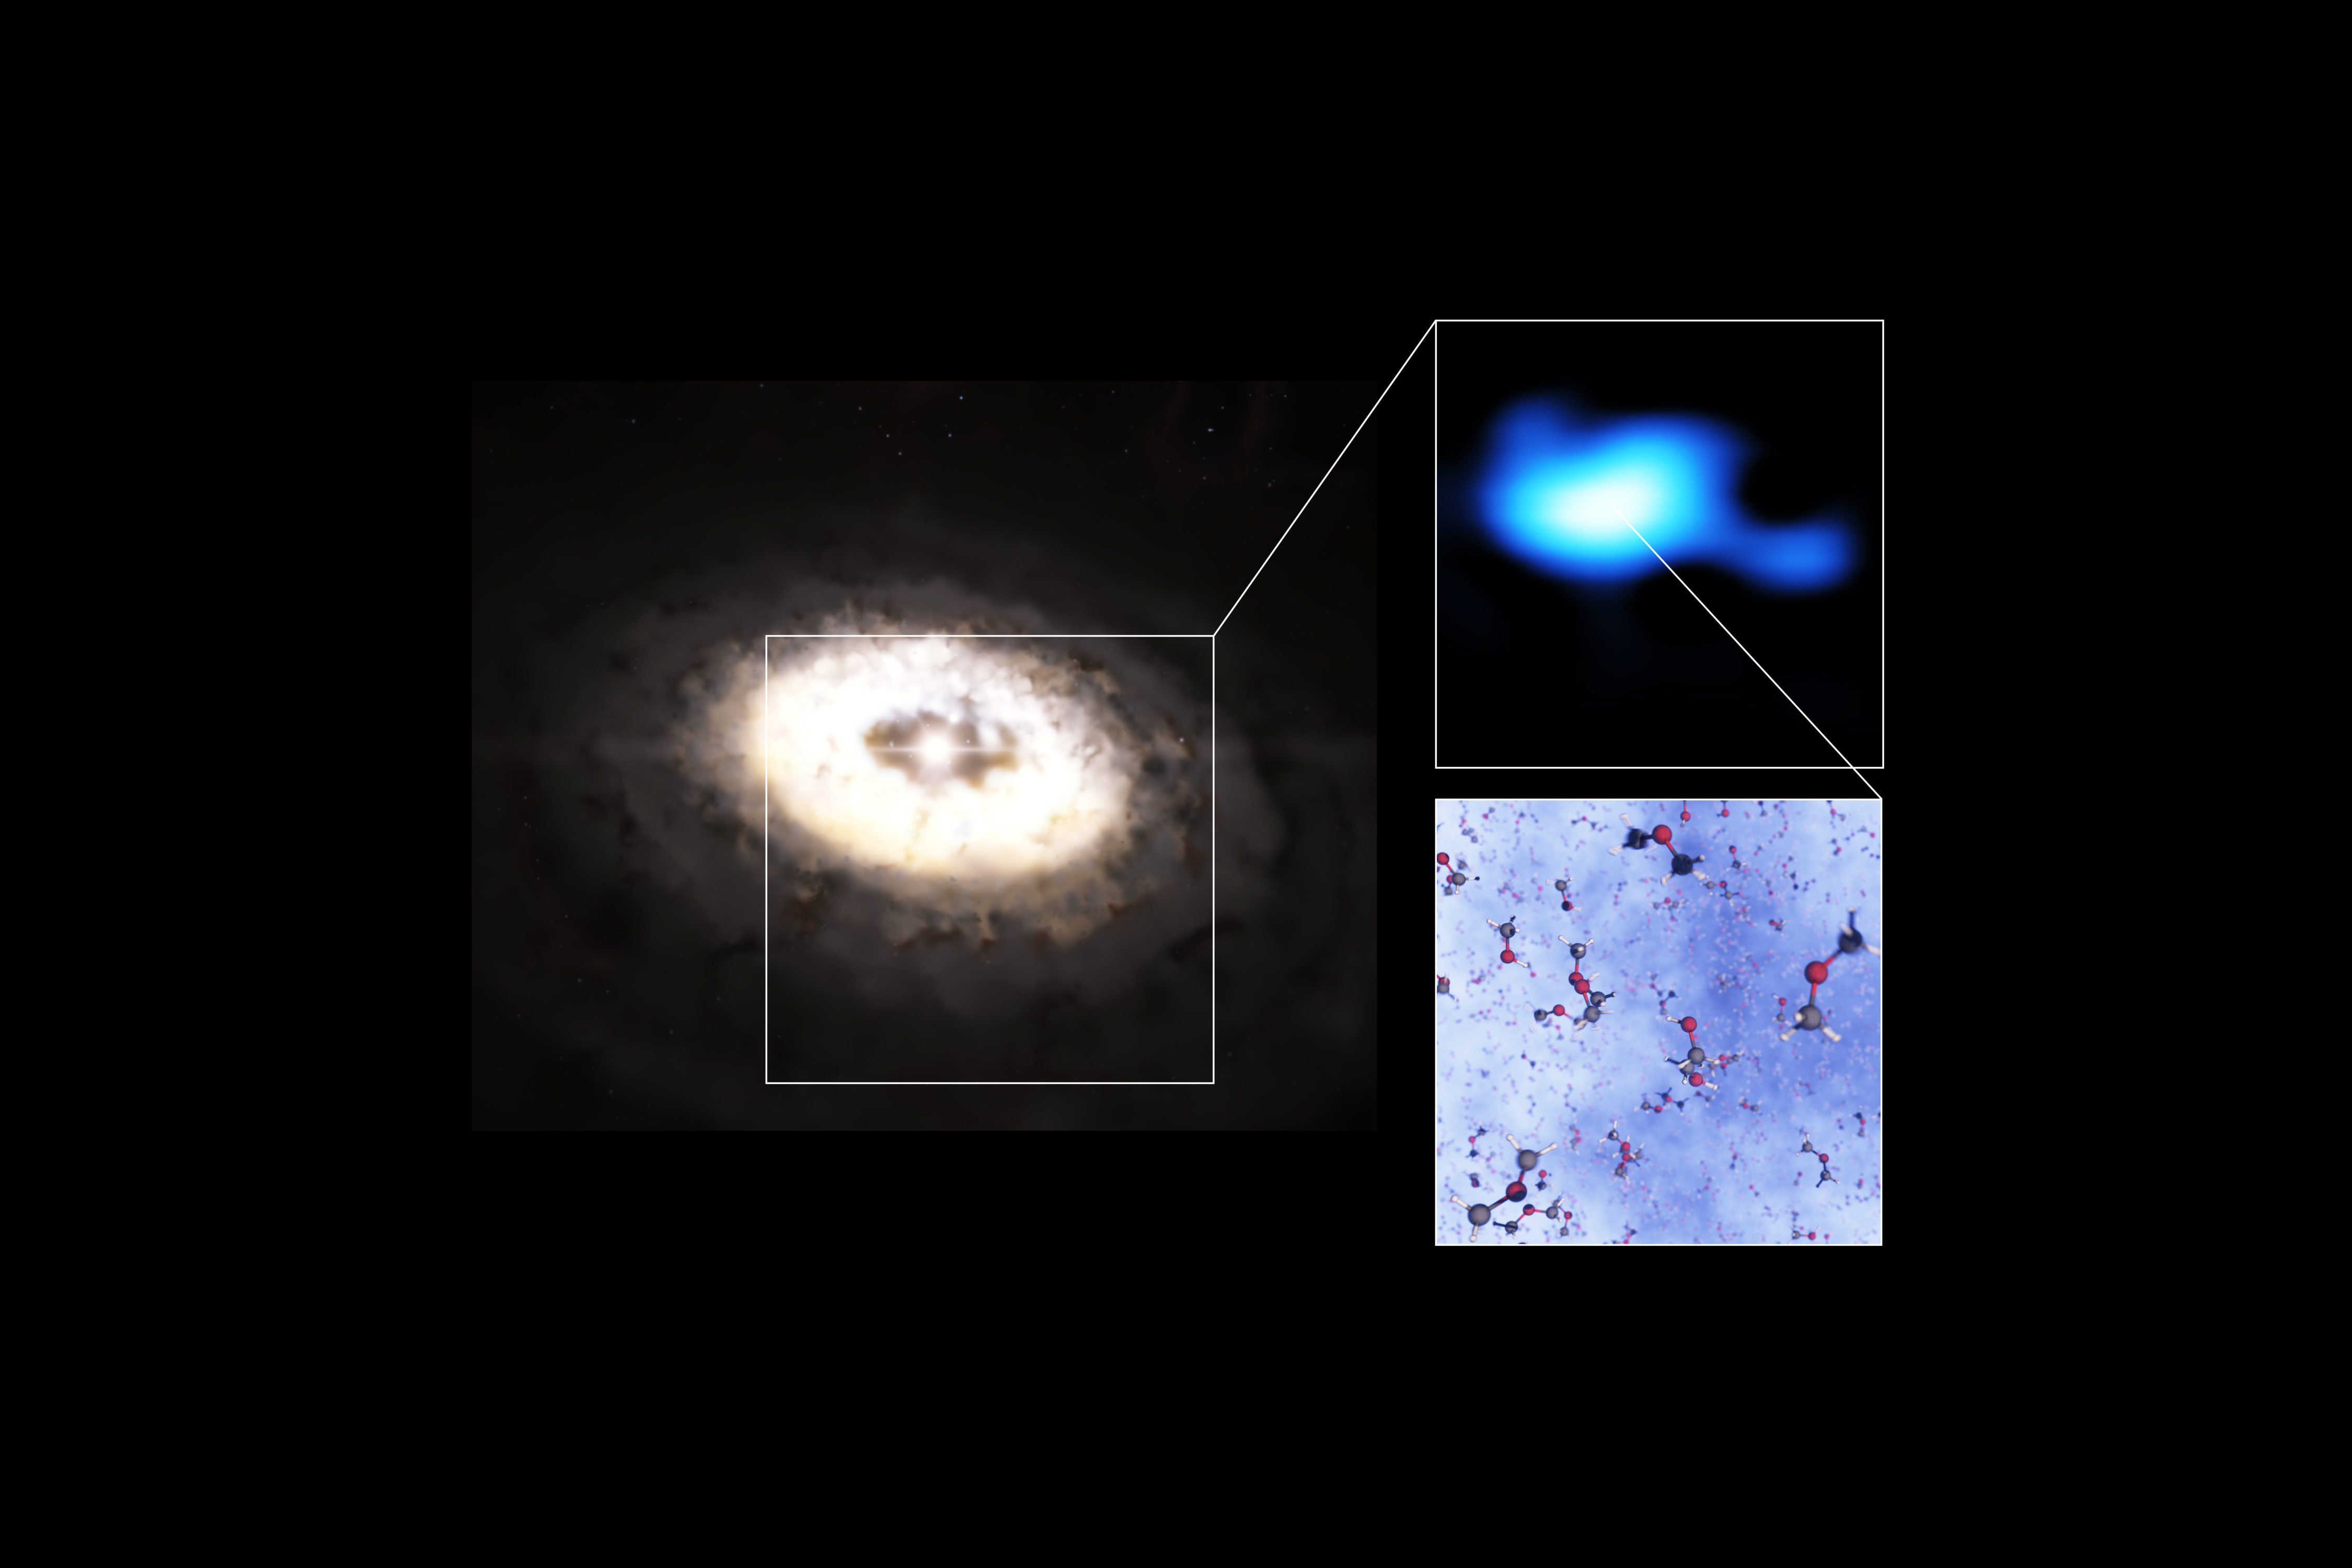 Esta composición nos muestra una reproducción artística del disco de formación de planetas que hay alrededor de la estrella IRS 48, también conocida como Oph-IRS 48. El disco contiene una región en forma de anacardo en su parte sur que atrapa granos de polvo de tamaño milimétrico. Estos granos pueden unirse y convertirse en objetos del tamaño de un kilómetro como cometas, asteroides y, potencialmente, incluso planetas. Observaciones recientes realizadas con el Atacama Large Millimeter/submillimeter Array (ALMA) detectaron varias moléculas orgánicas complejas en esta región, incluido el dimetil éter, la molécula más grande encontrada en un disco de formación planetaria hasta la fecha. La emisión que señala la presencia de esta molécula (observaciones reales mostradas en azul) es claramente más fuerte en la trampa de polvo del disco. La composición también muestra un modelo de la molécula. Crédito: ESO/L. Calçada, ALMA (ESO/NAOJ/NRAO)/A. Pohl, van der Marel et al., Brunken et al.